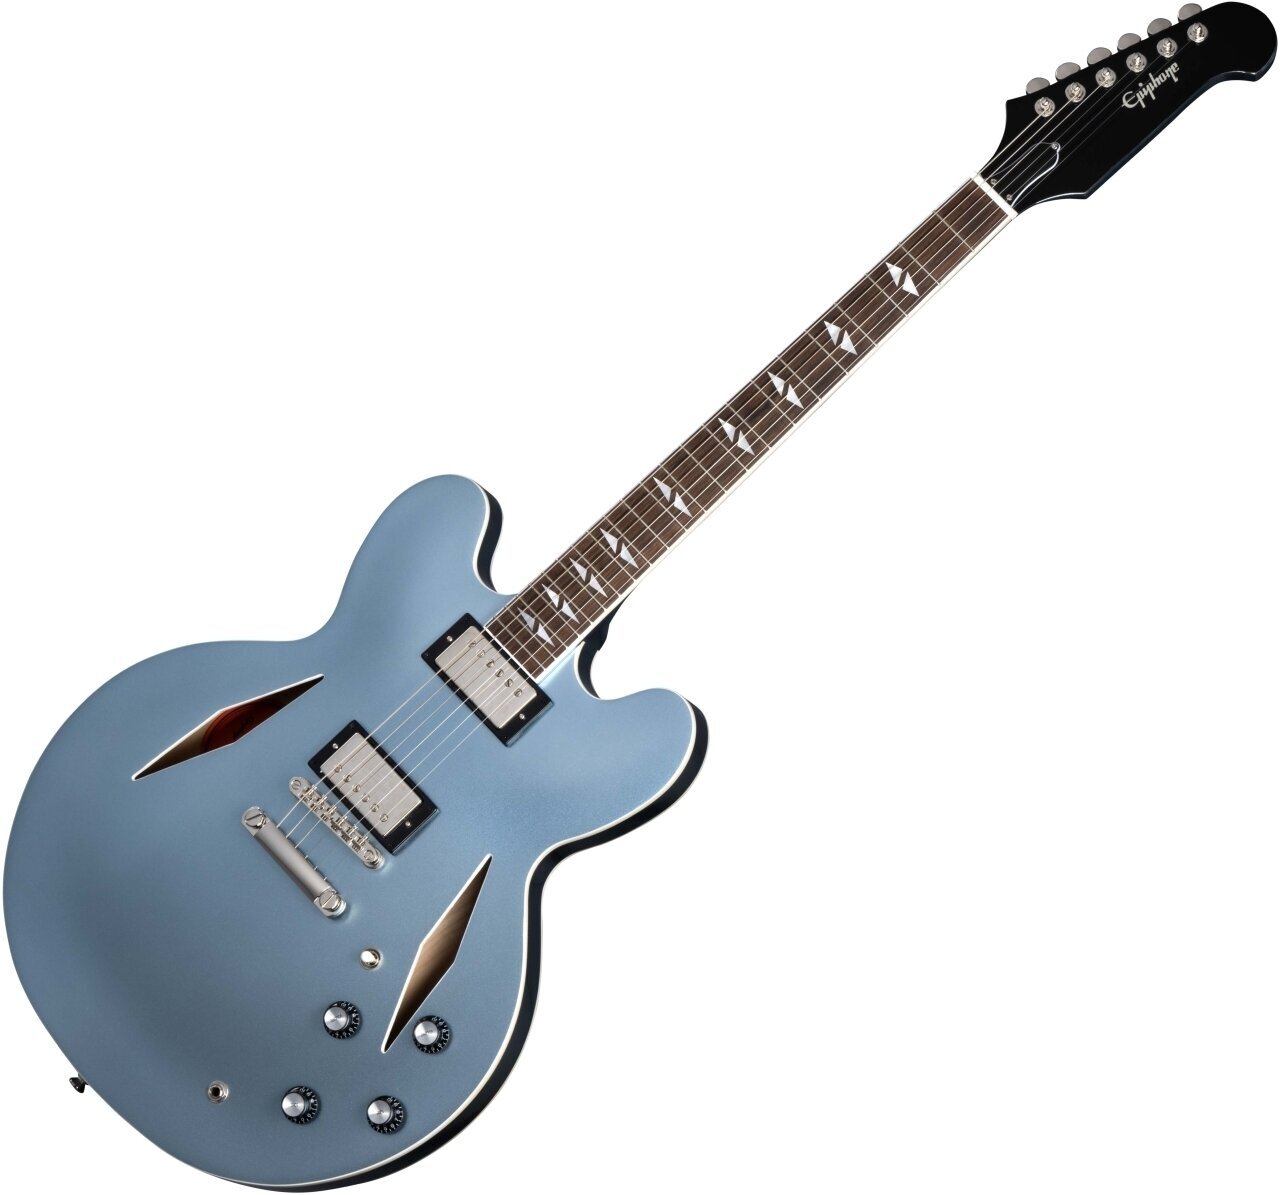 Ημιακουστική Κιθάρα Epiphone Dave Grohl DG-335 Pelham Blue